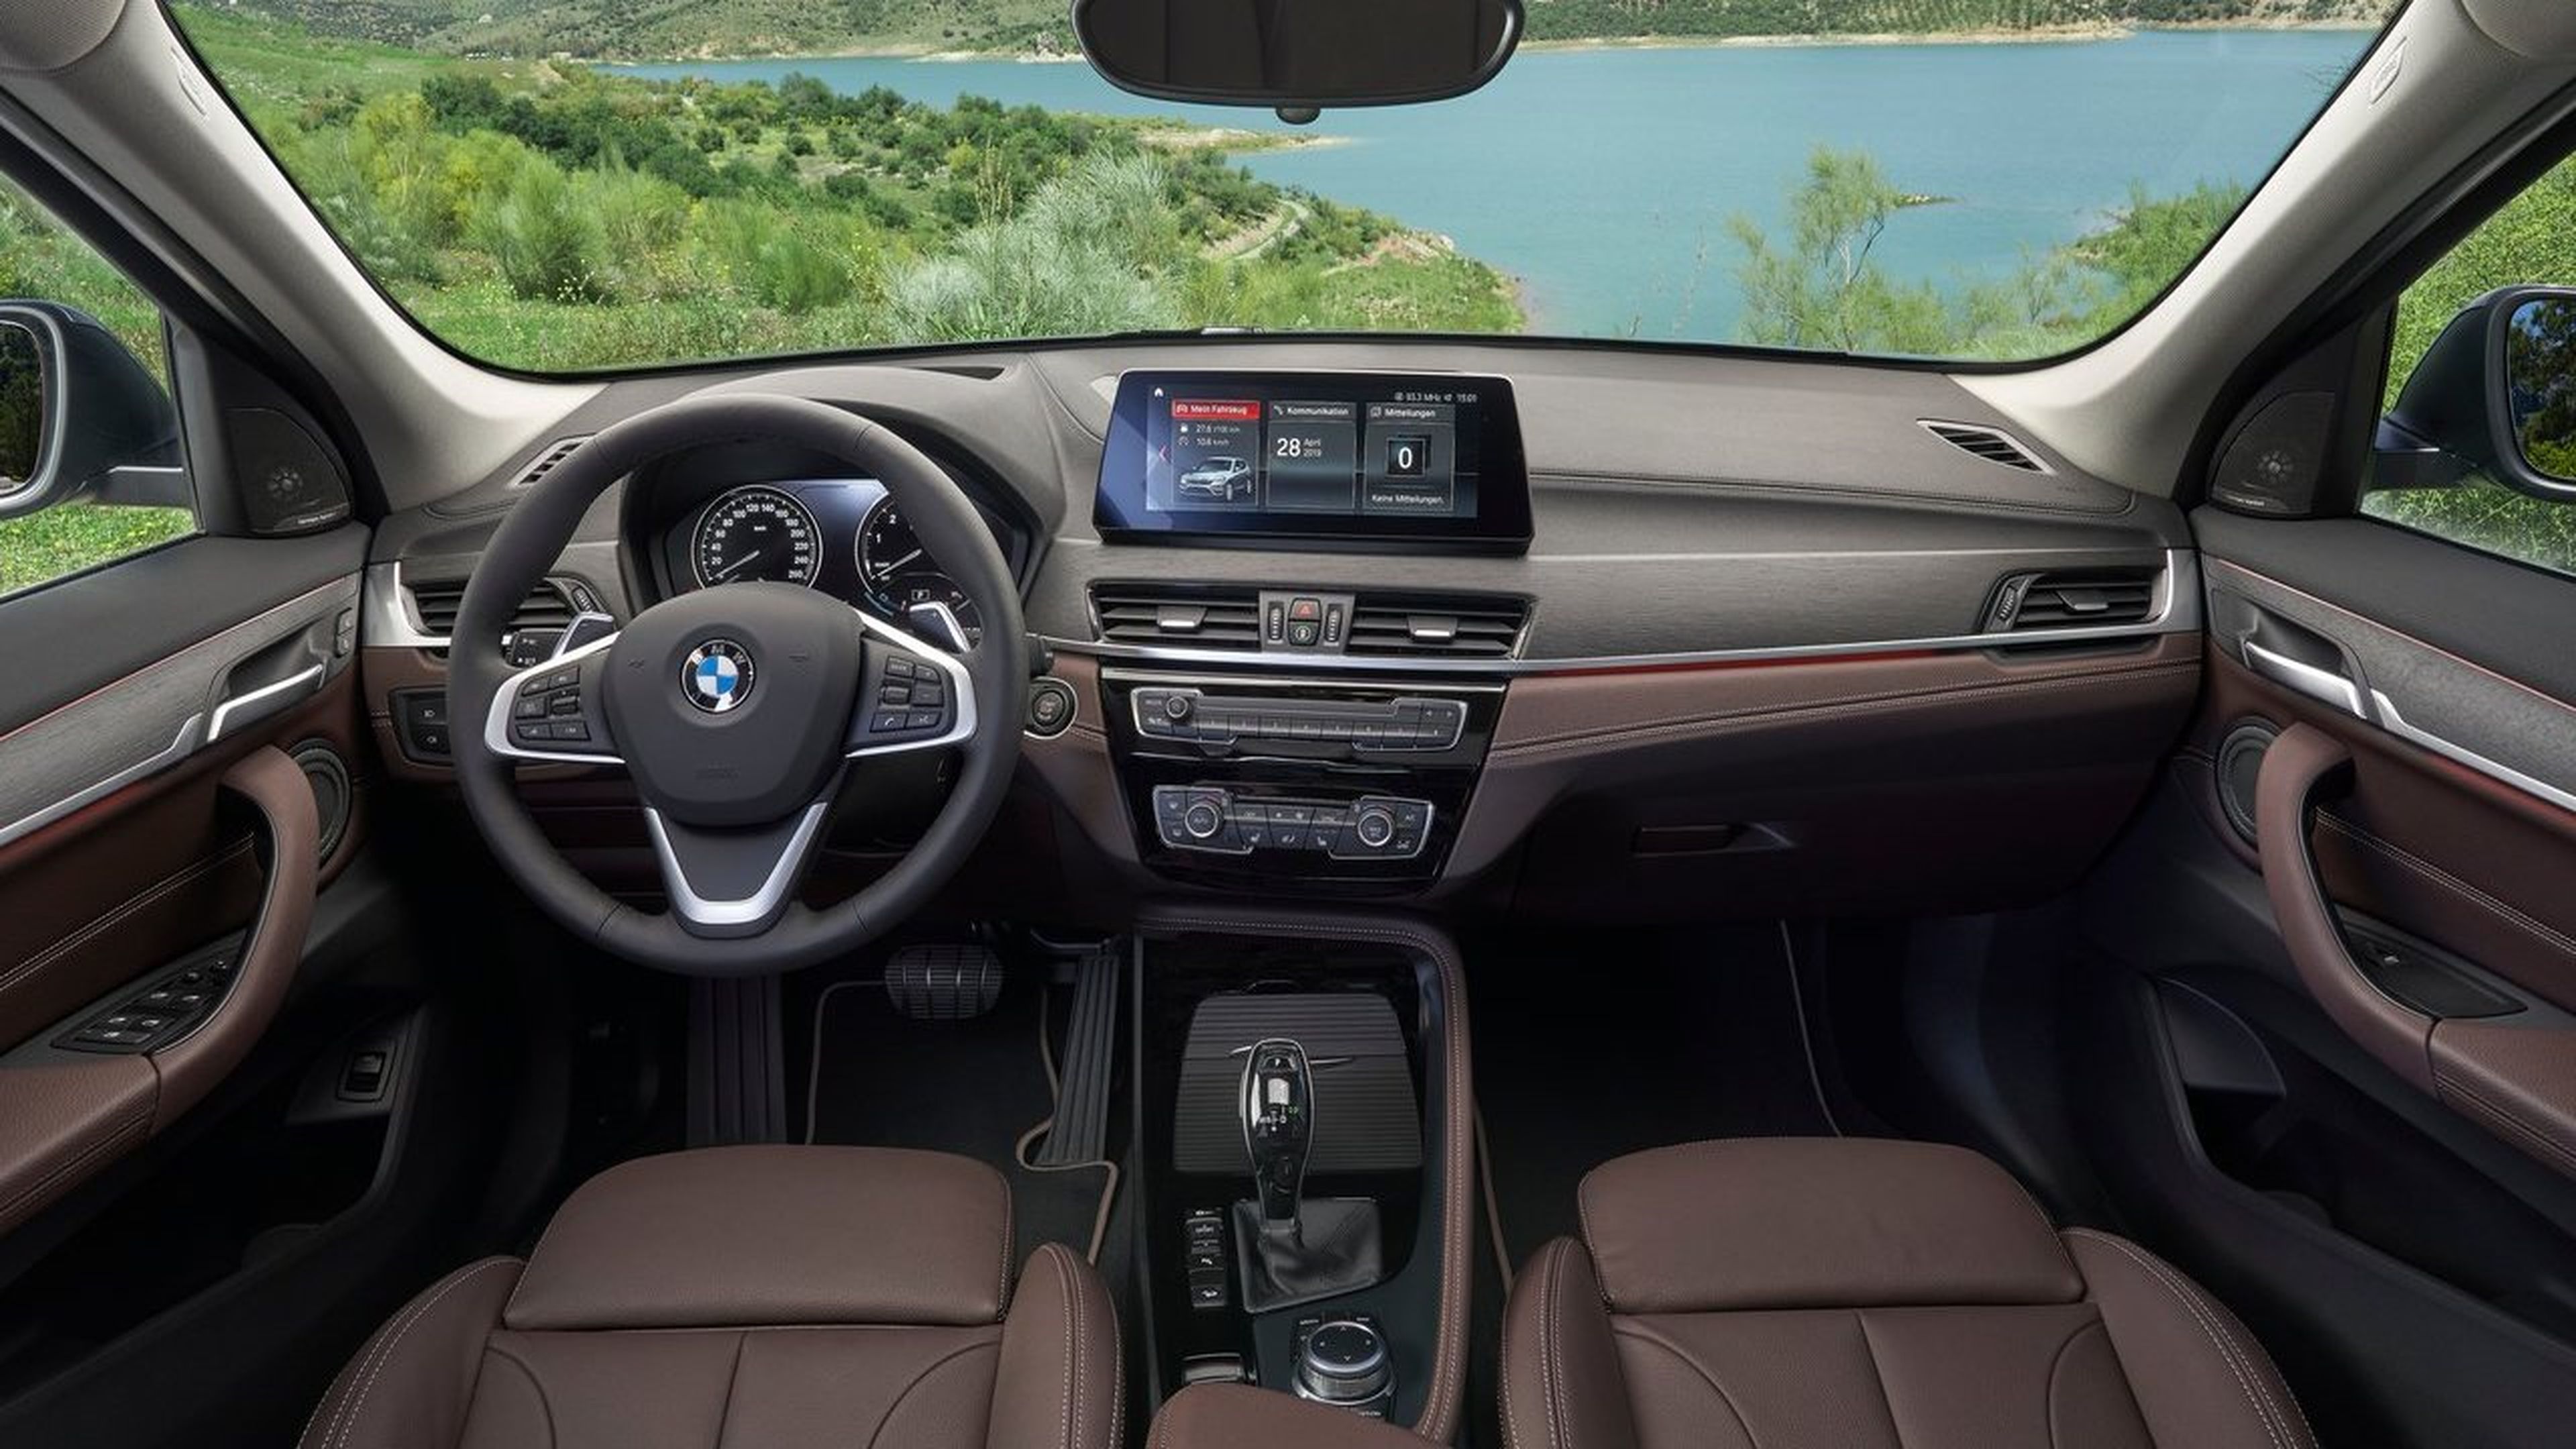 BMW X1 2020, estos son sus principales cambios